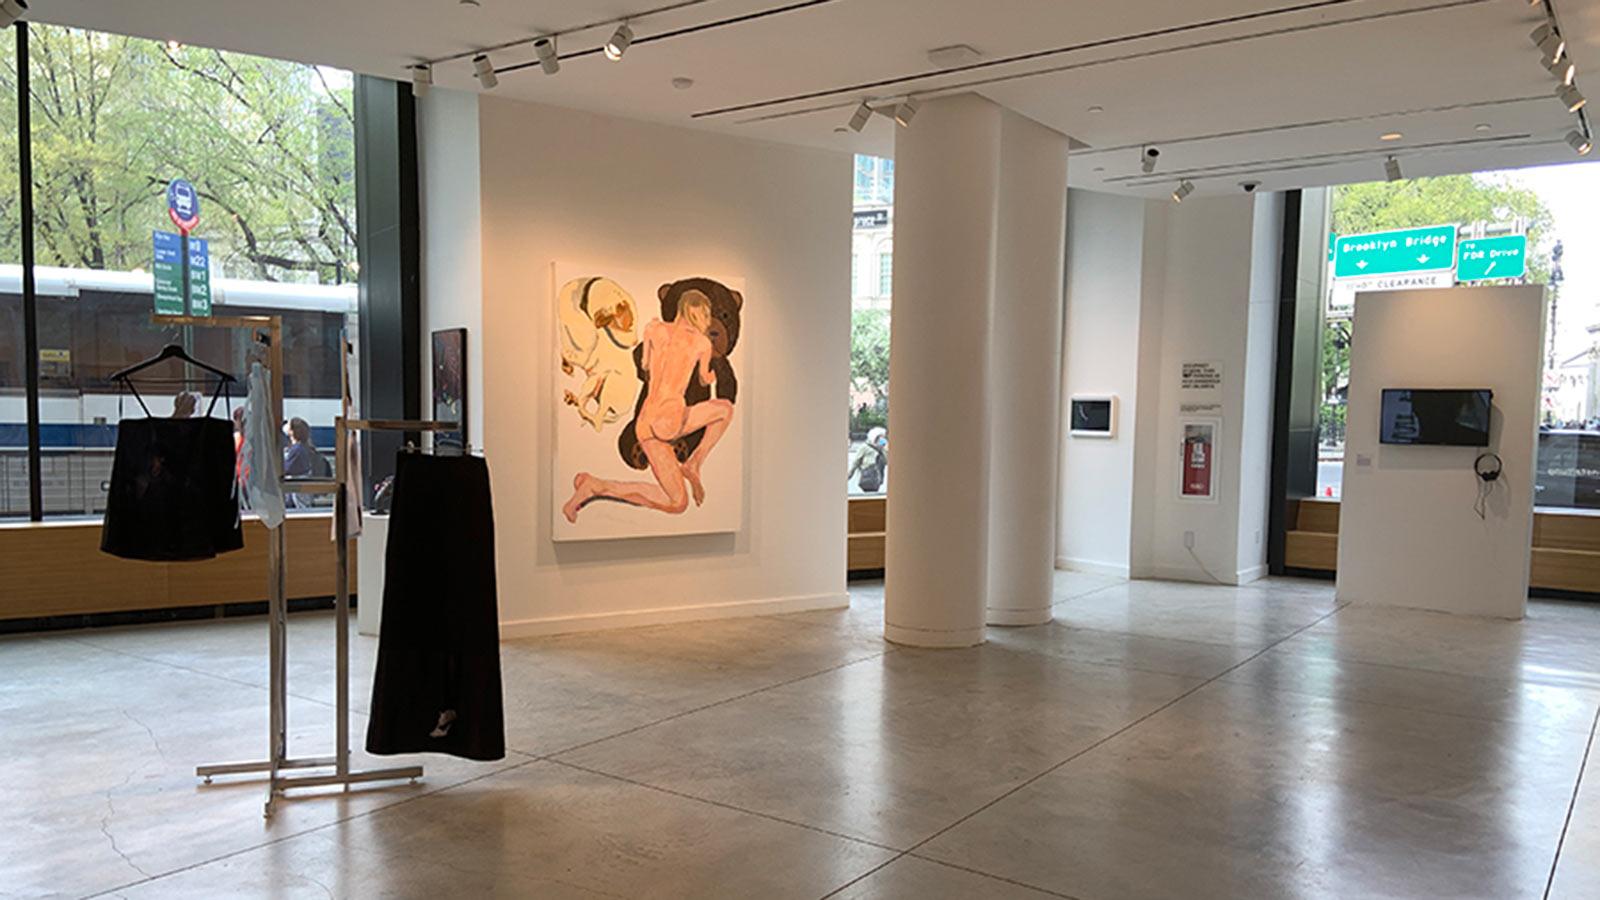 Geisterveranstaltung exhibition on display in art gallery